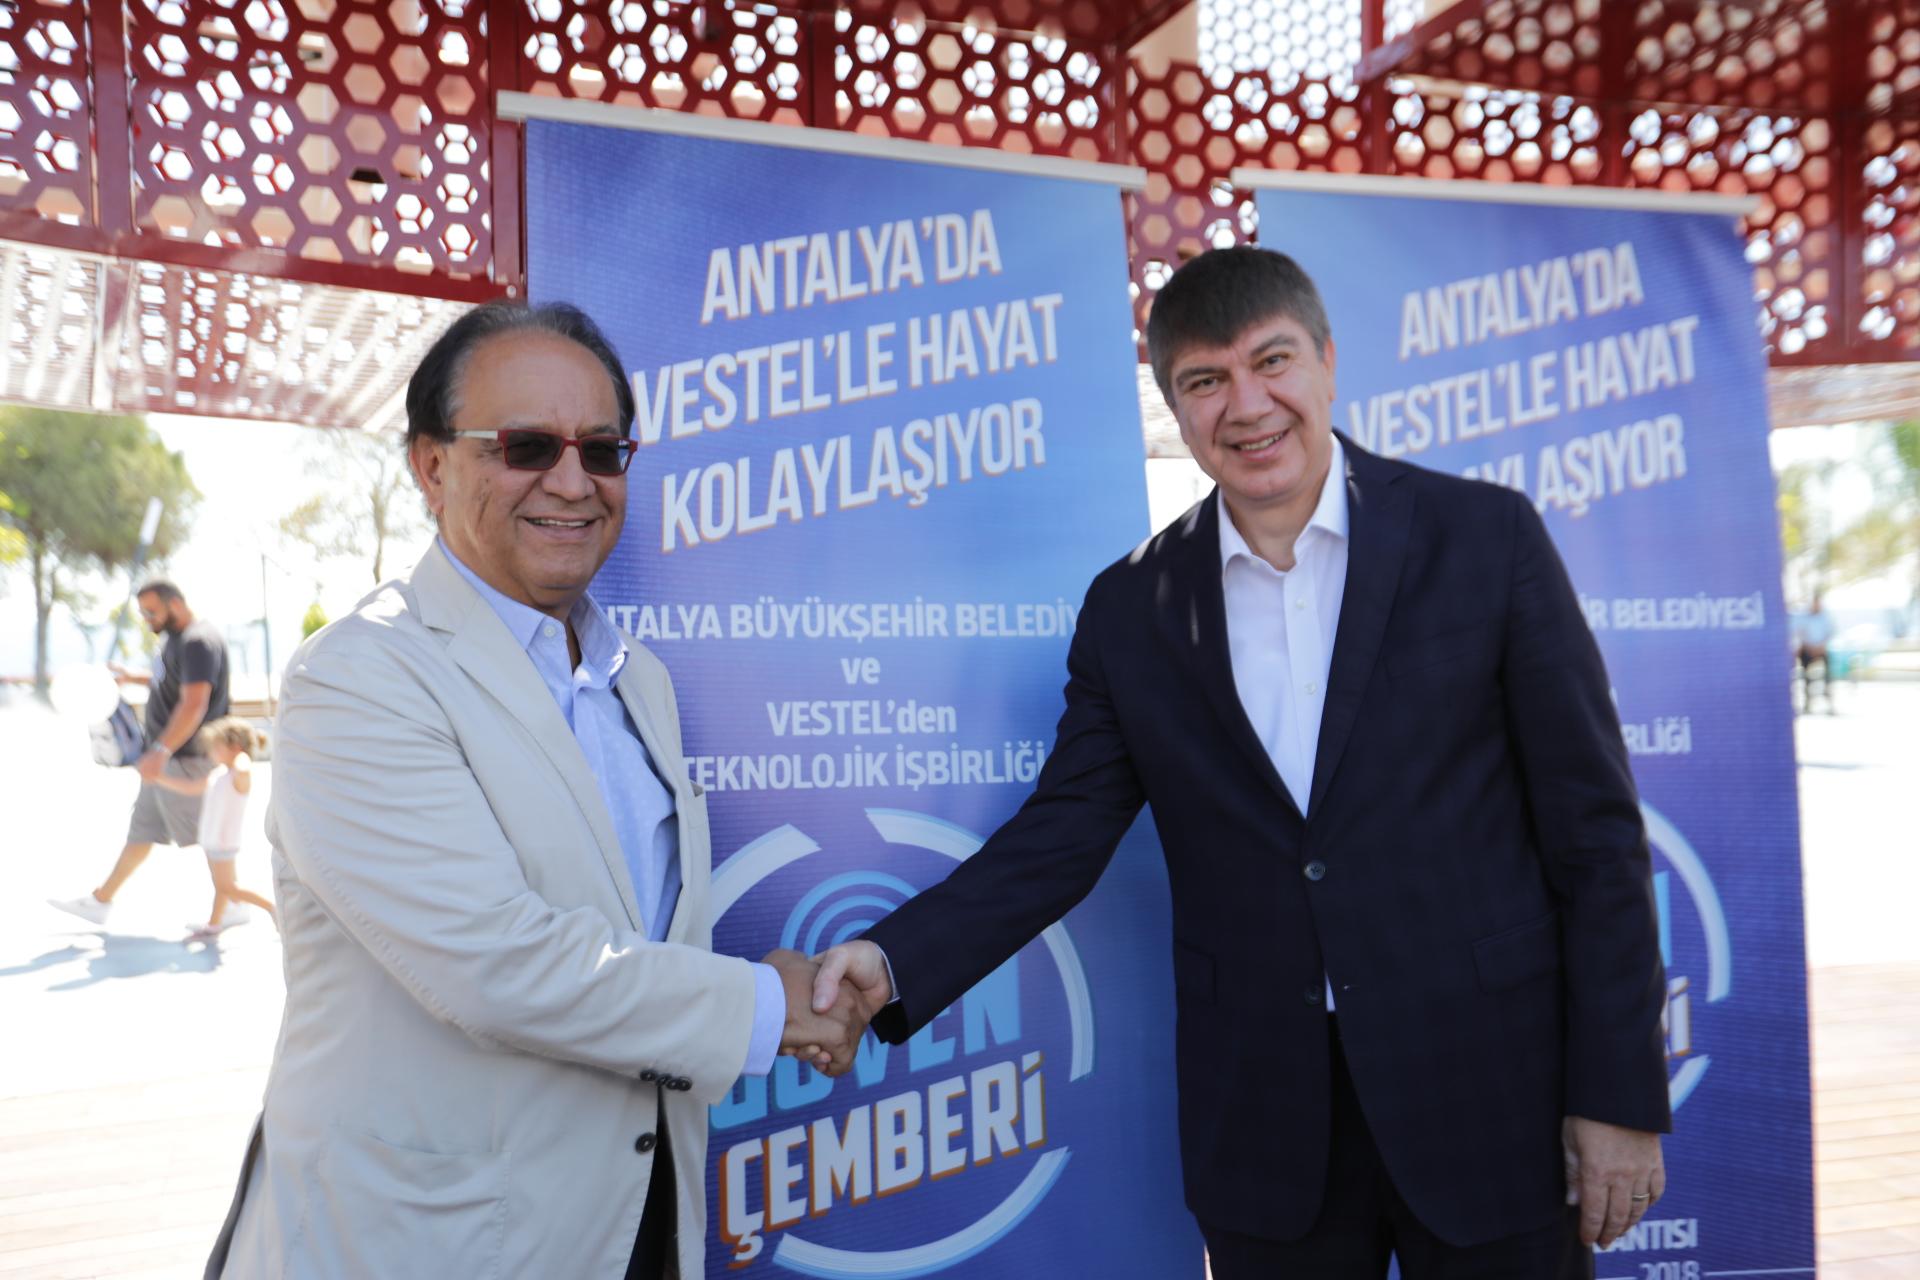 Antalya Büyükşehir Belediyesi İle Vestel’den Teknolojik İş Birliği